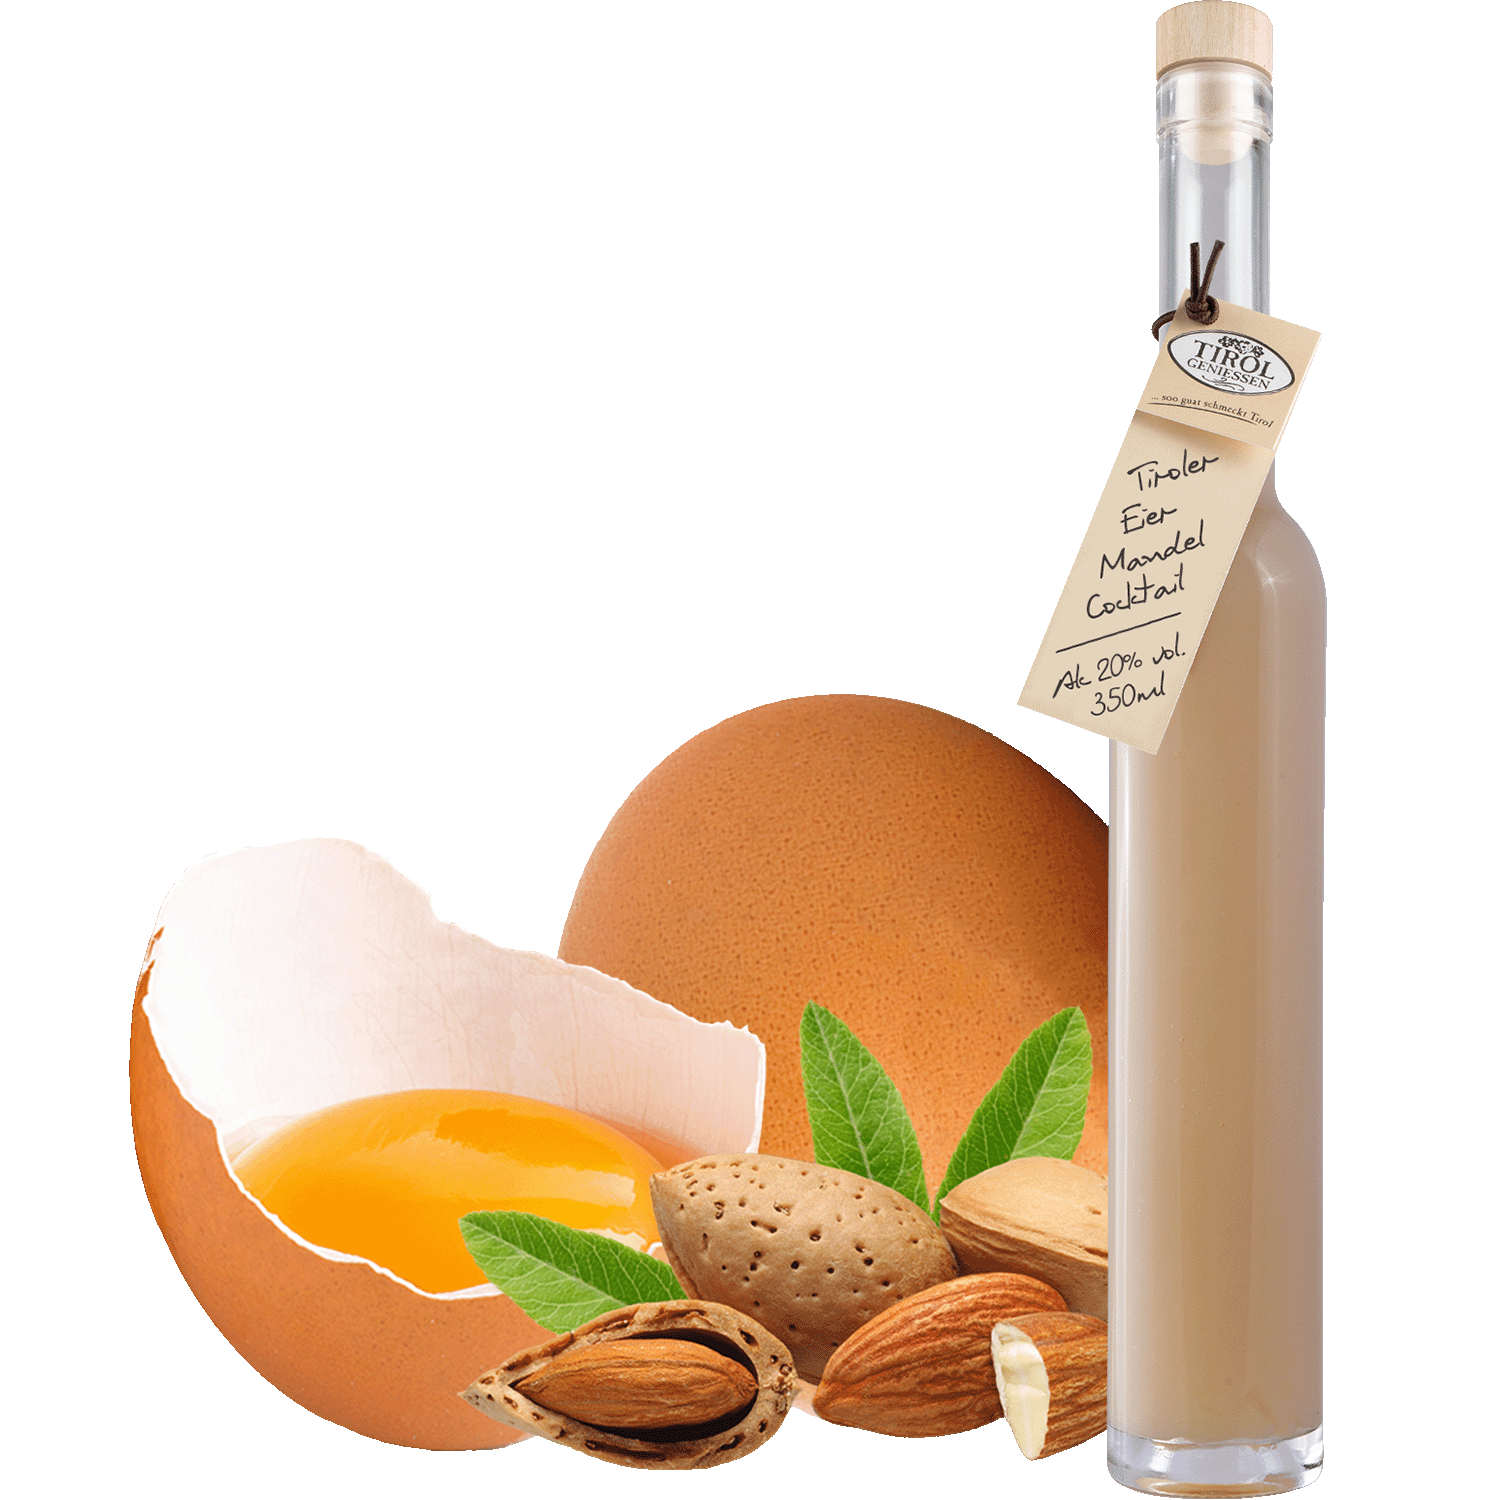 Eier Mandel Cocktail in Geschenkflasche aus Österreich von Tirol Geniessen